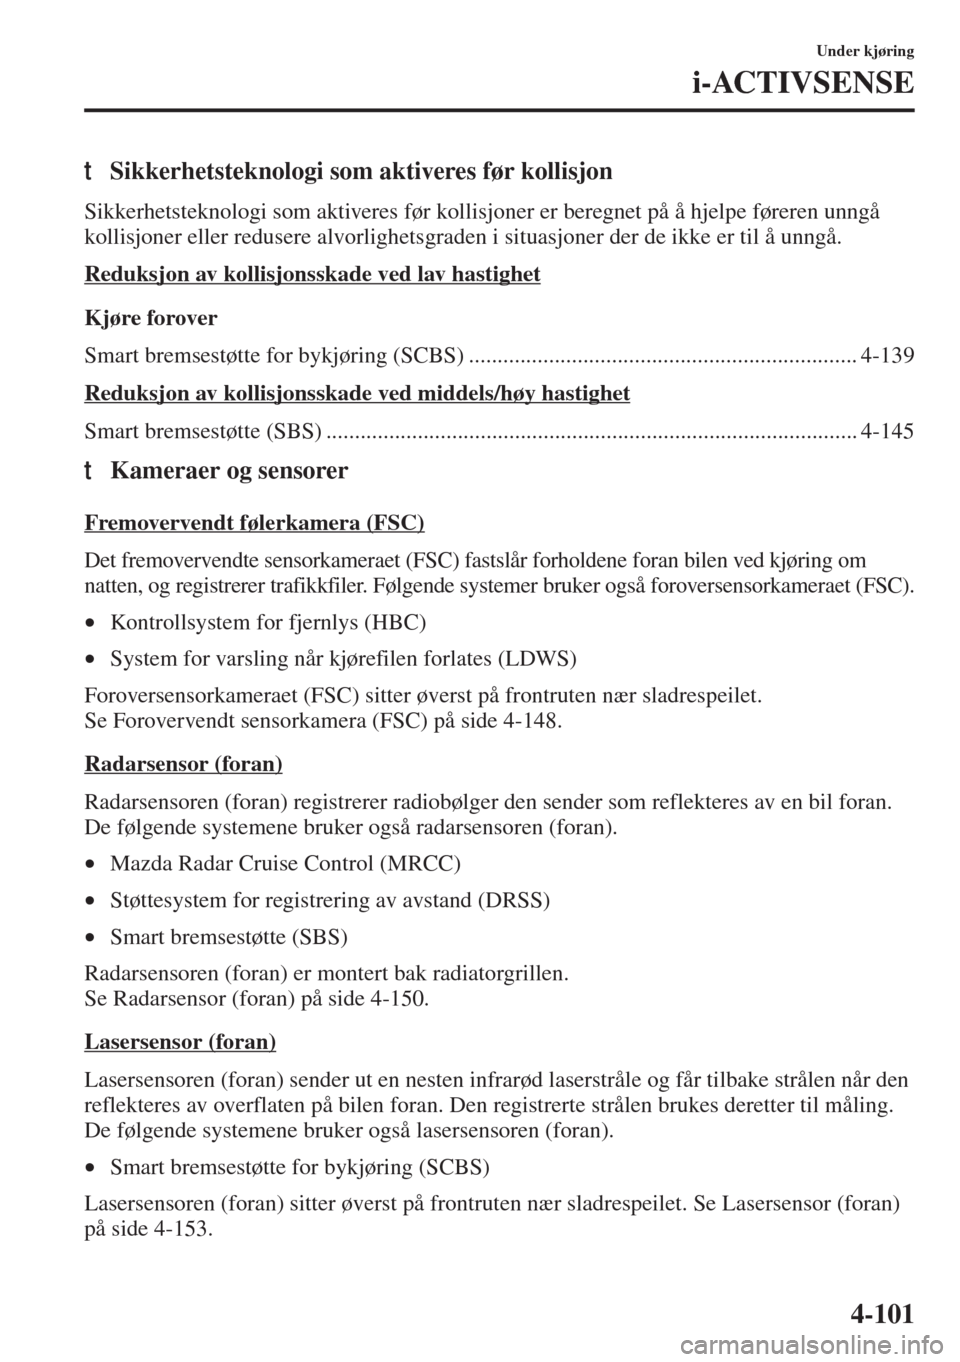 MAZDA MODEL 3 HATCHBACK 2015  Brukerhåndbok (in Norwegian) 4-101
Under kjøring
i-ACTIVSENSE
tSikkerhetsteknologi som aktiveres før kollisjon
Sikkerhetsteknologi som aktiveres før kollisjoner er beregnet på å hjelpe føreren unngå 
kollisjoner eller redu